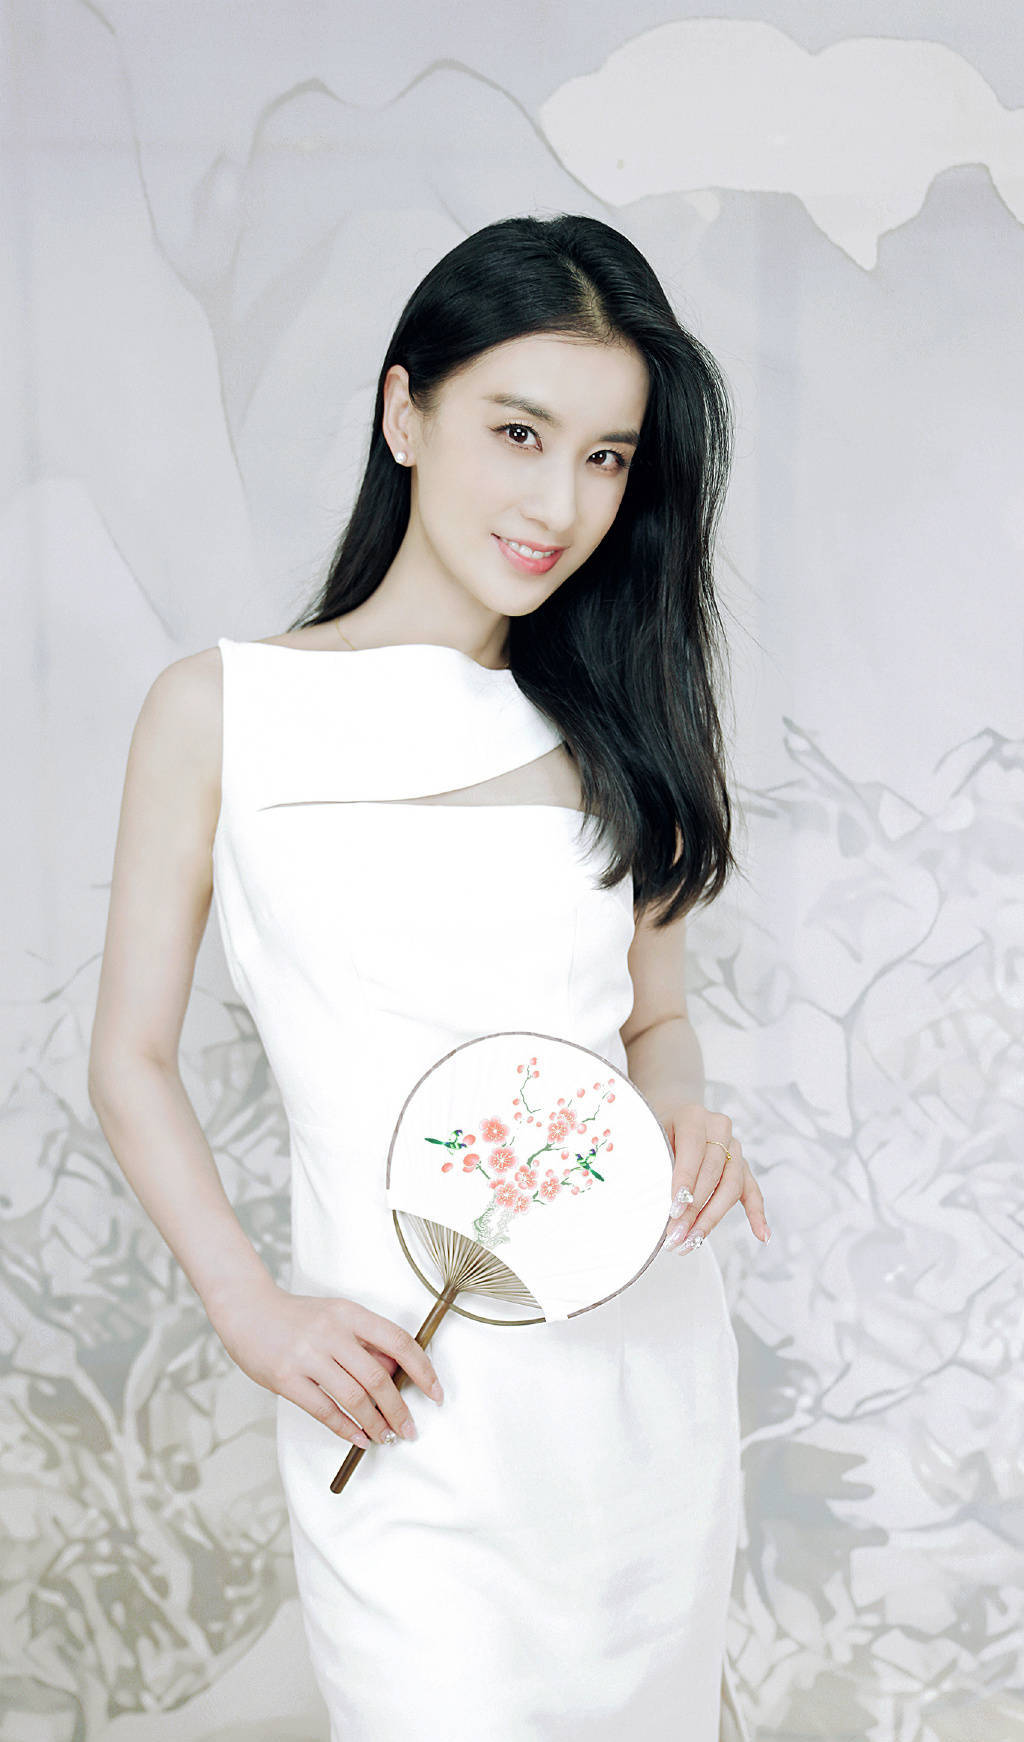 1 12 搜狐娱乐讯 8月26日,黄圣依一组白裙写真曝光,她长发如丝纯美如